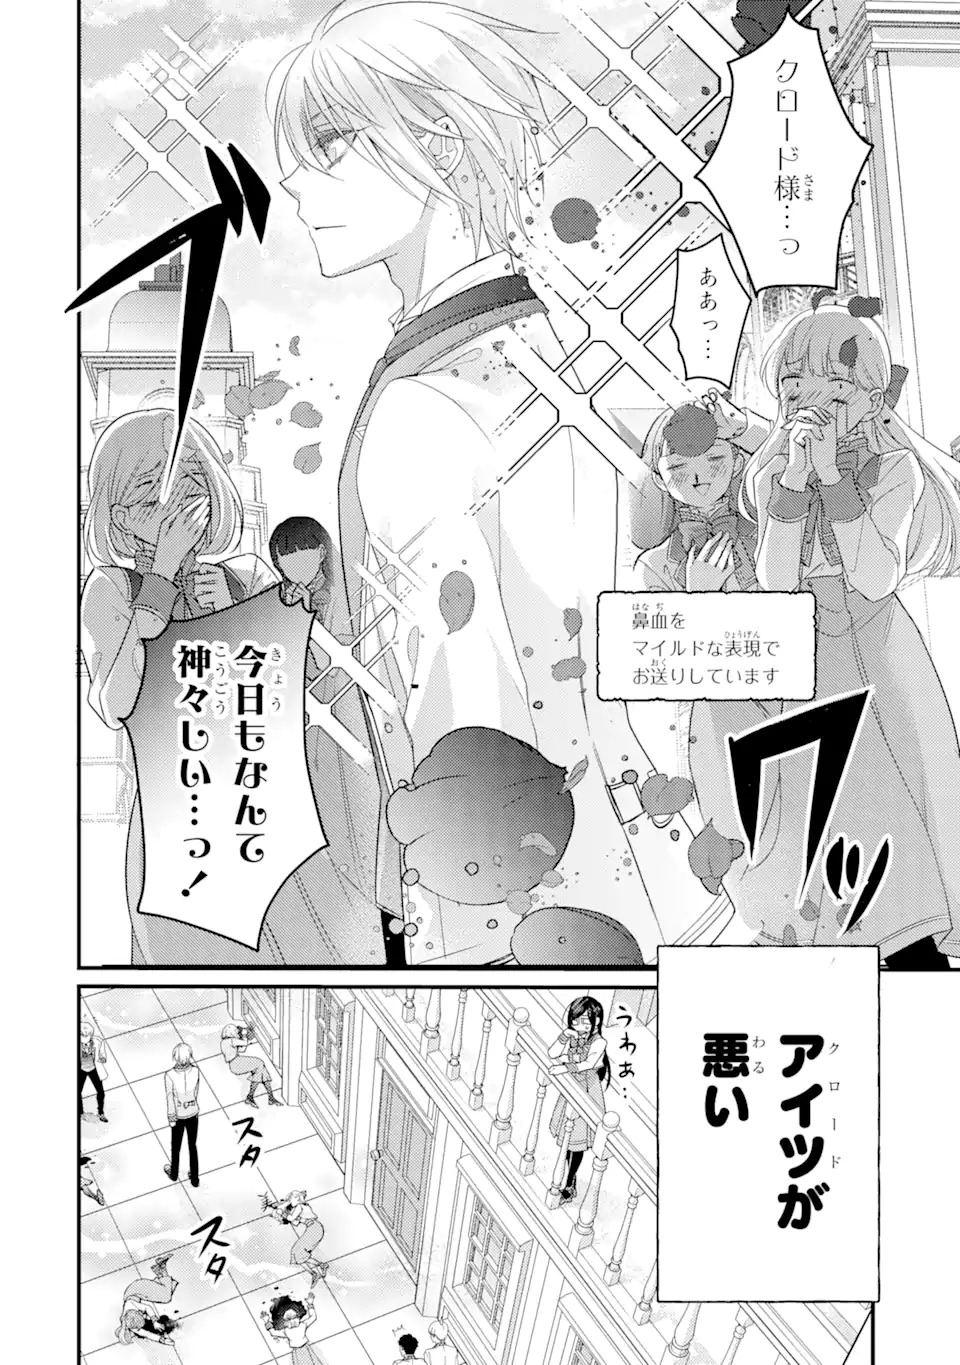 Kekkon suru Shinde Shimau no de, Kanst Seijo (Lv. 99) wa Meshi Tero Shimasu! - Chapter 2.1 - Page 2